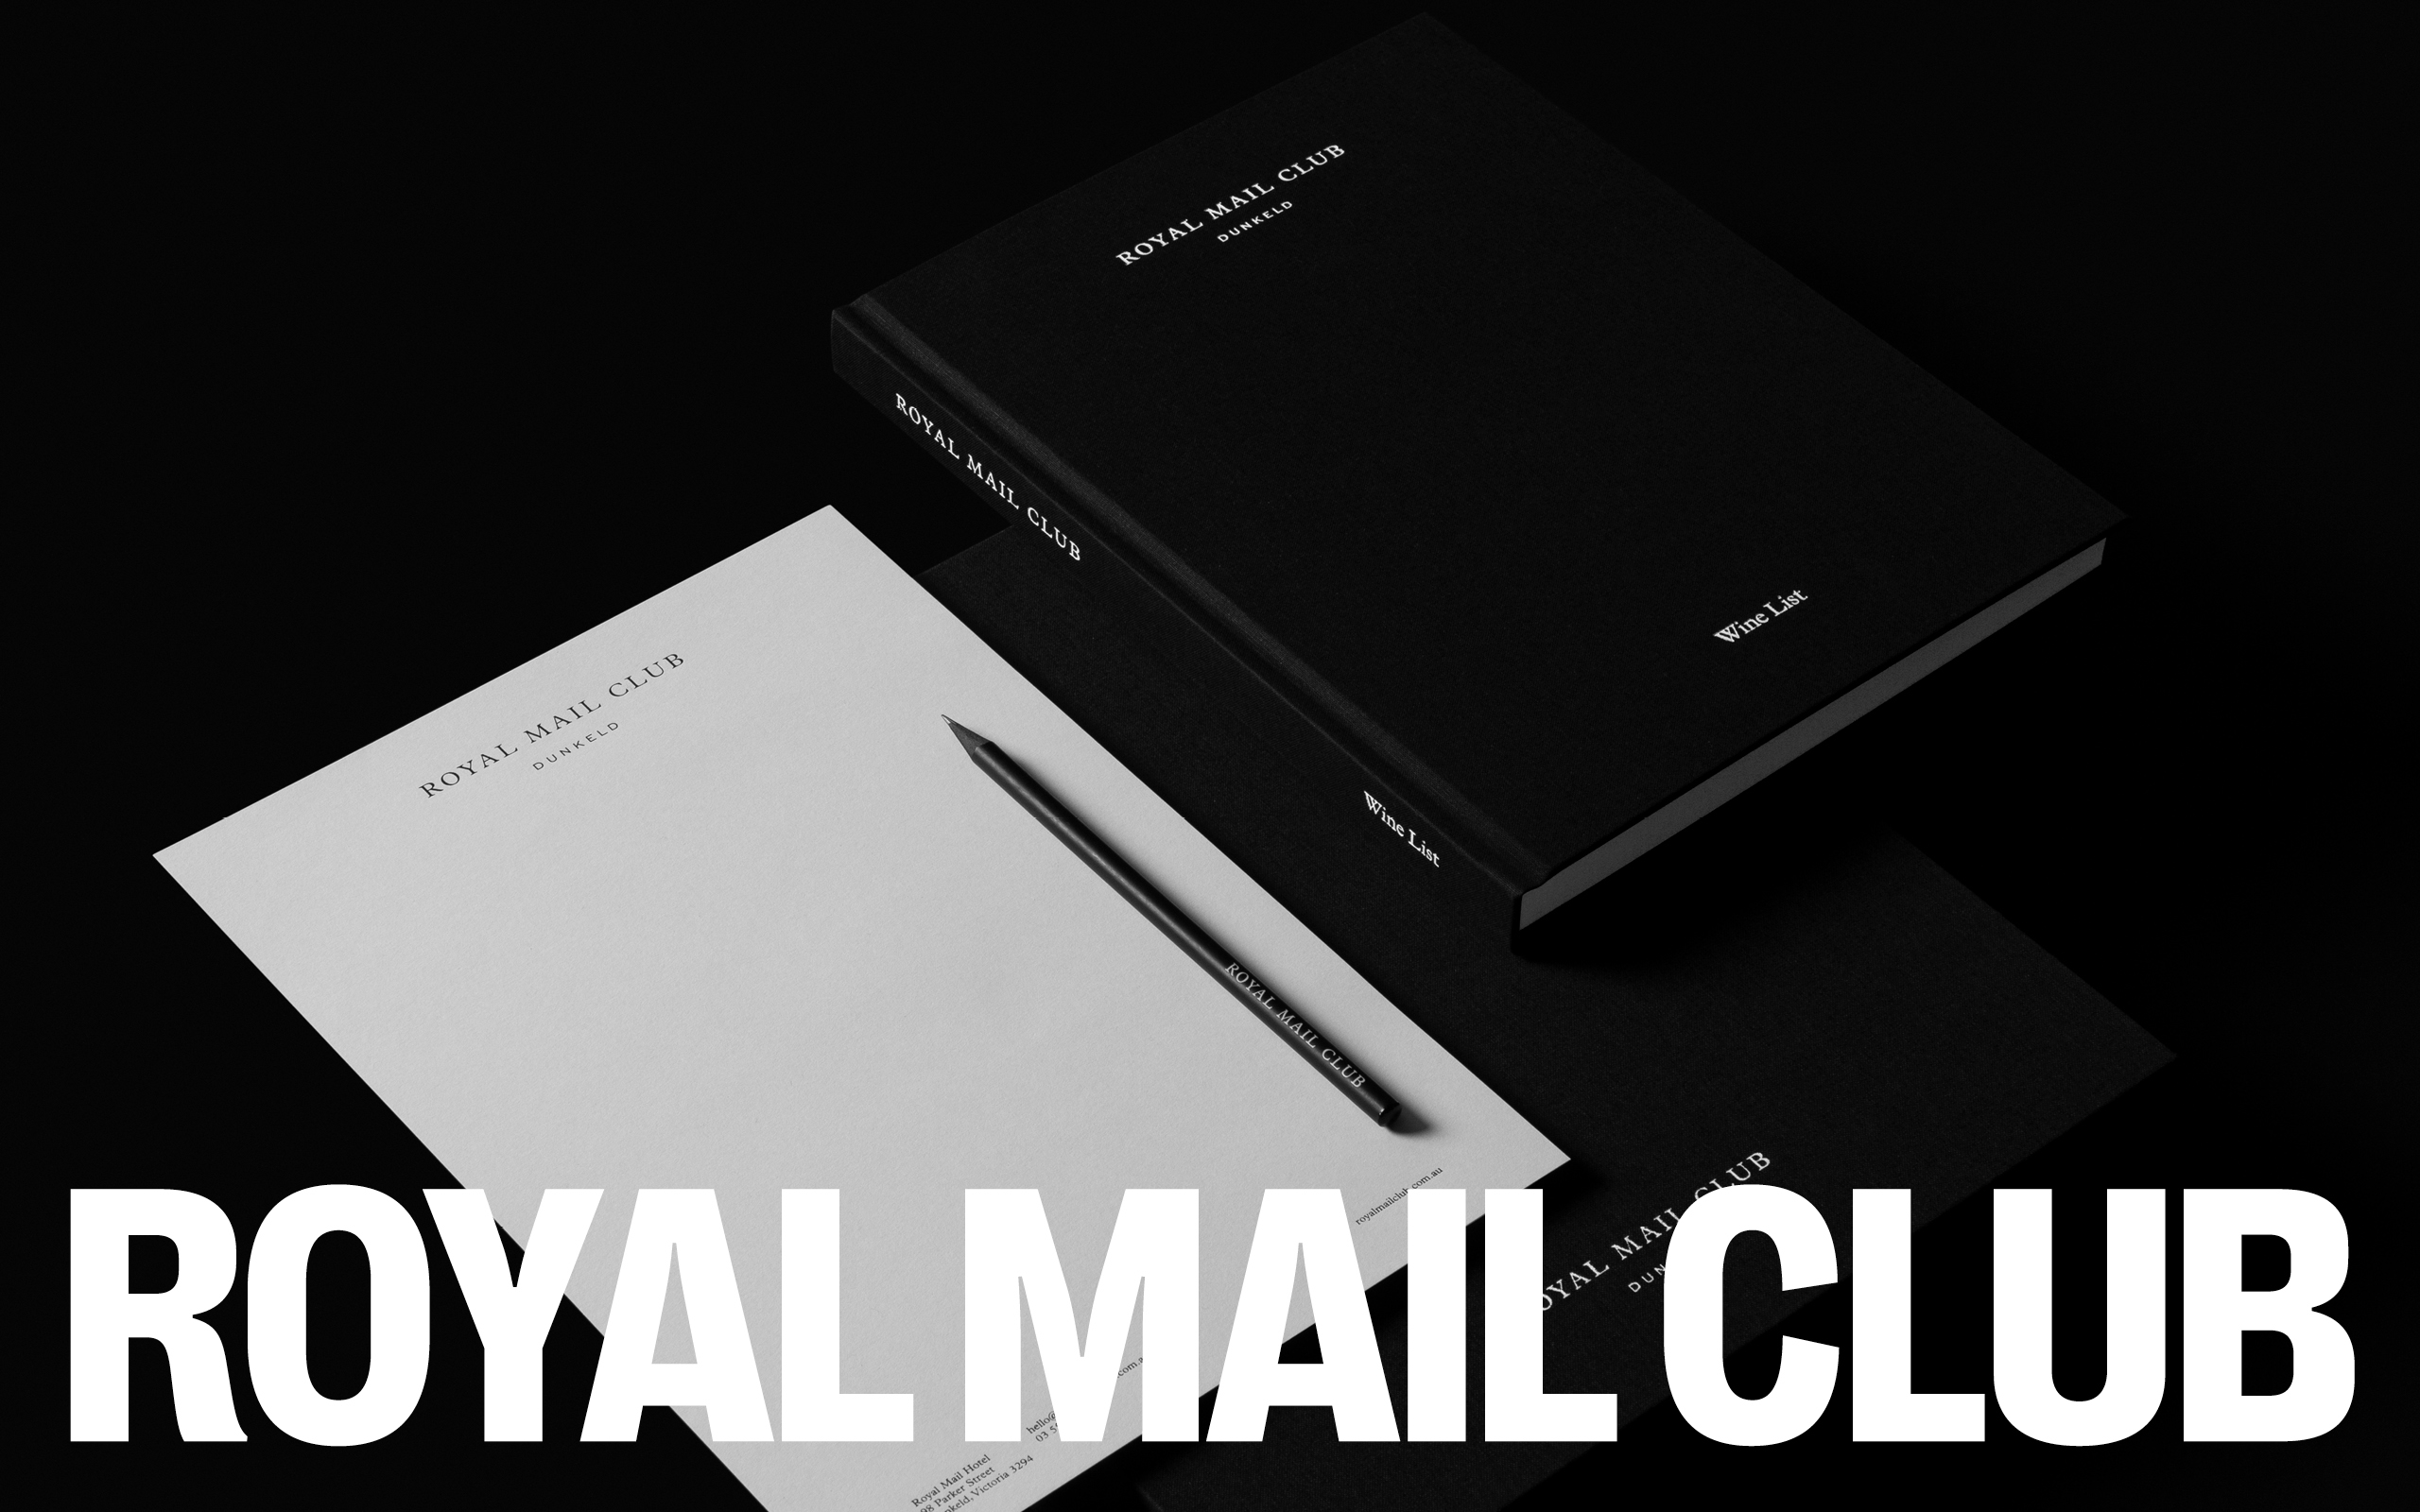 Royal Mail Club